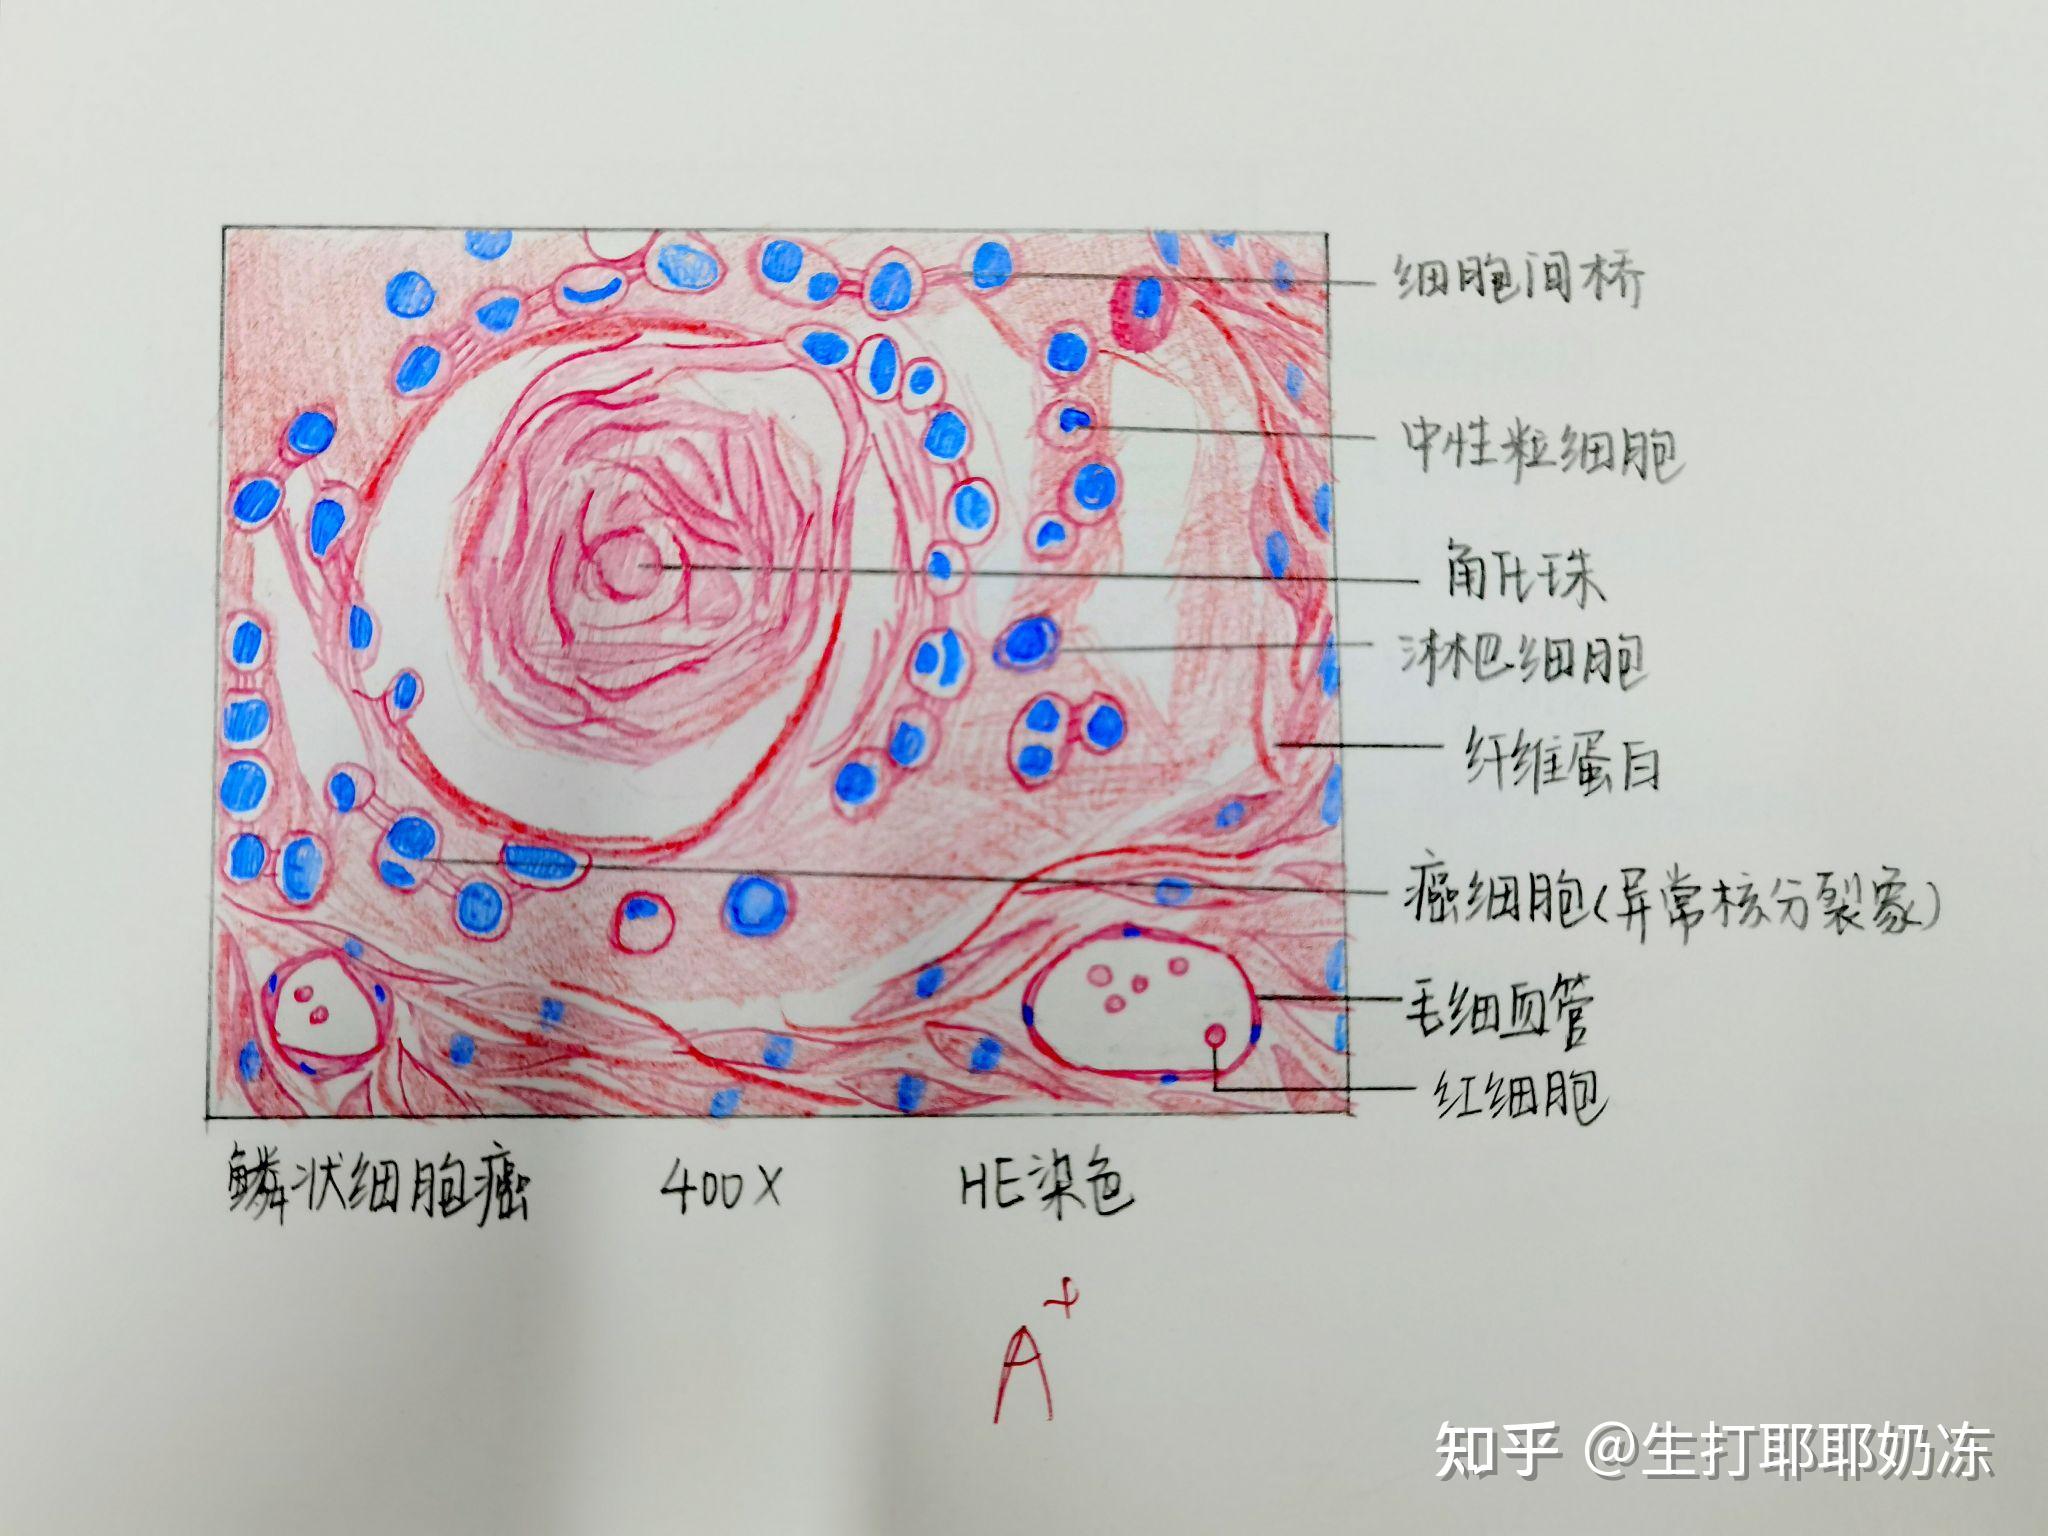 高分化腺癌红蓝铅笔图图片